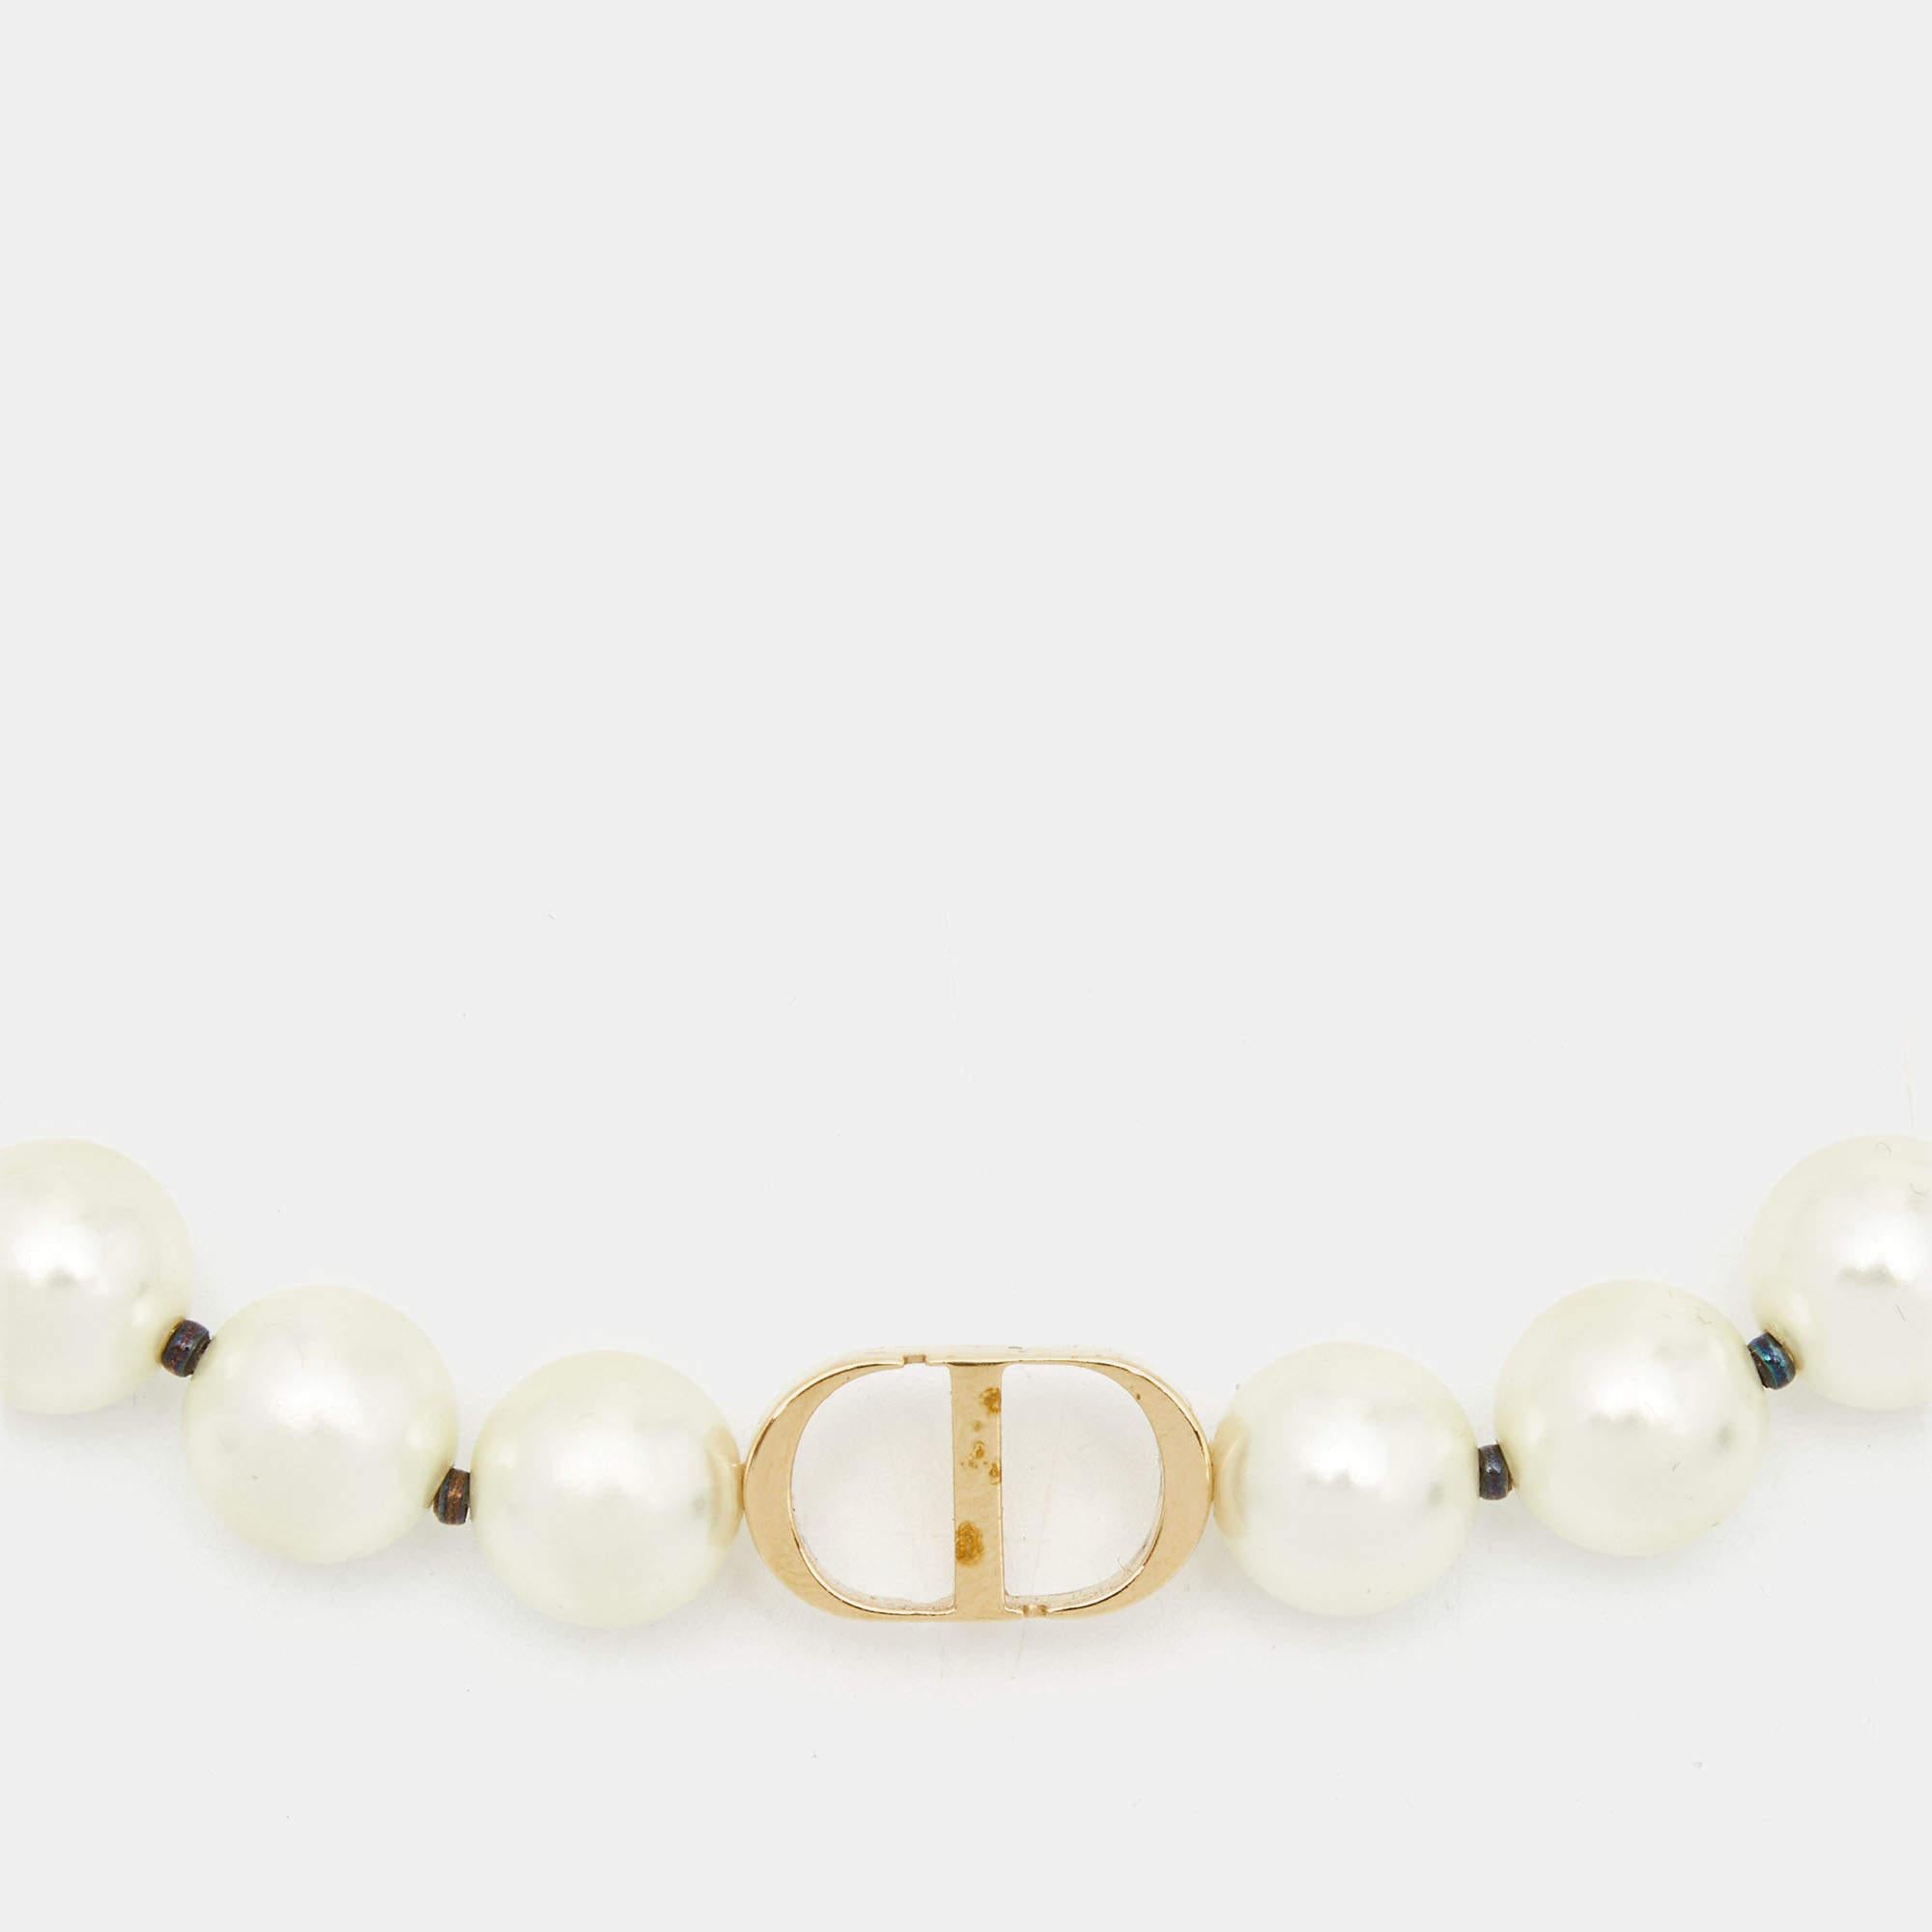 dior 30 montaigne pearl necklace